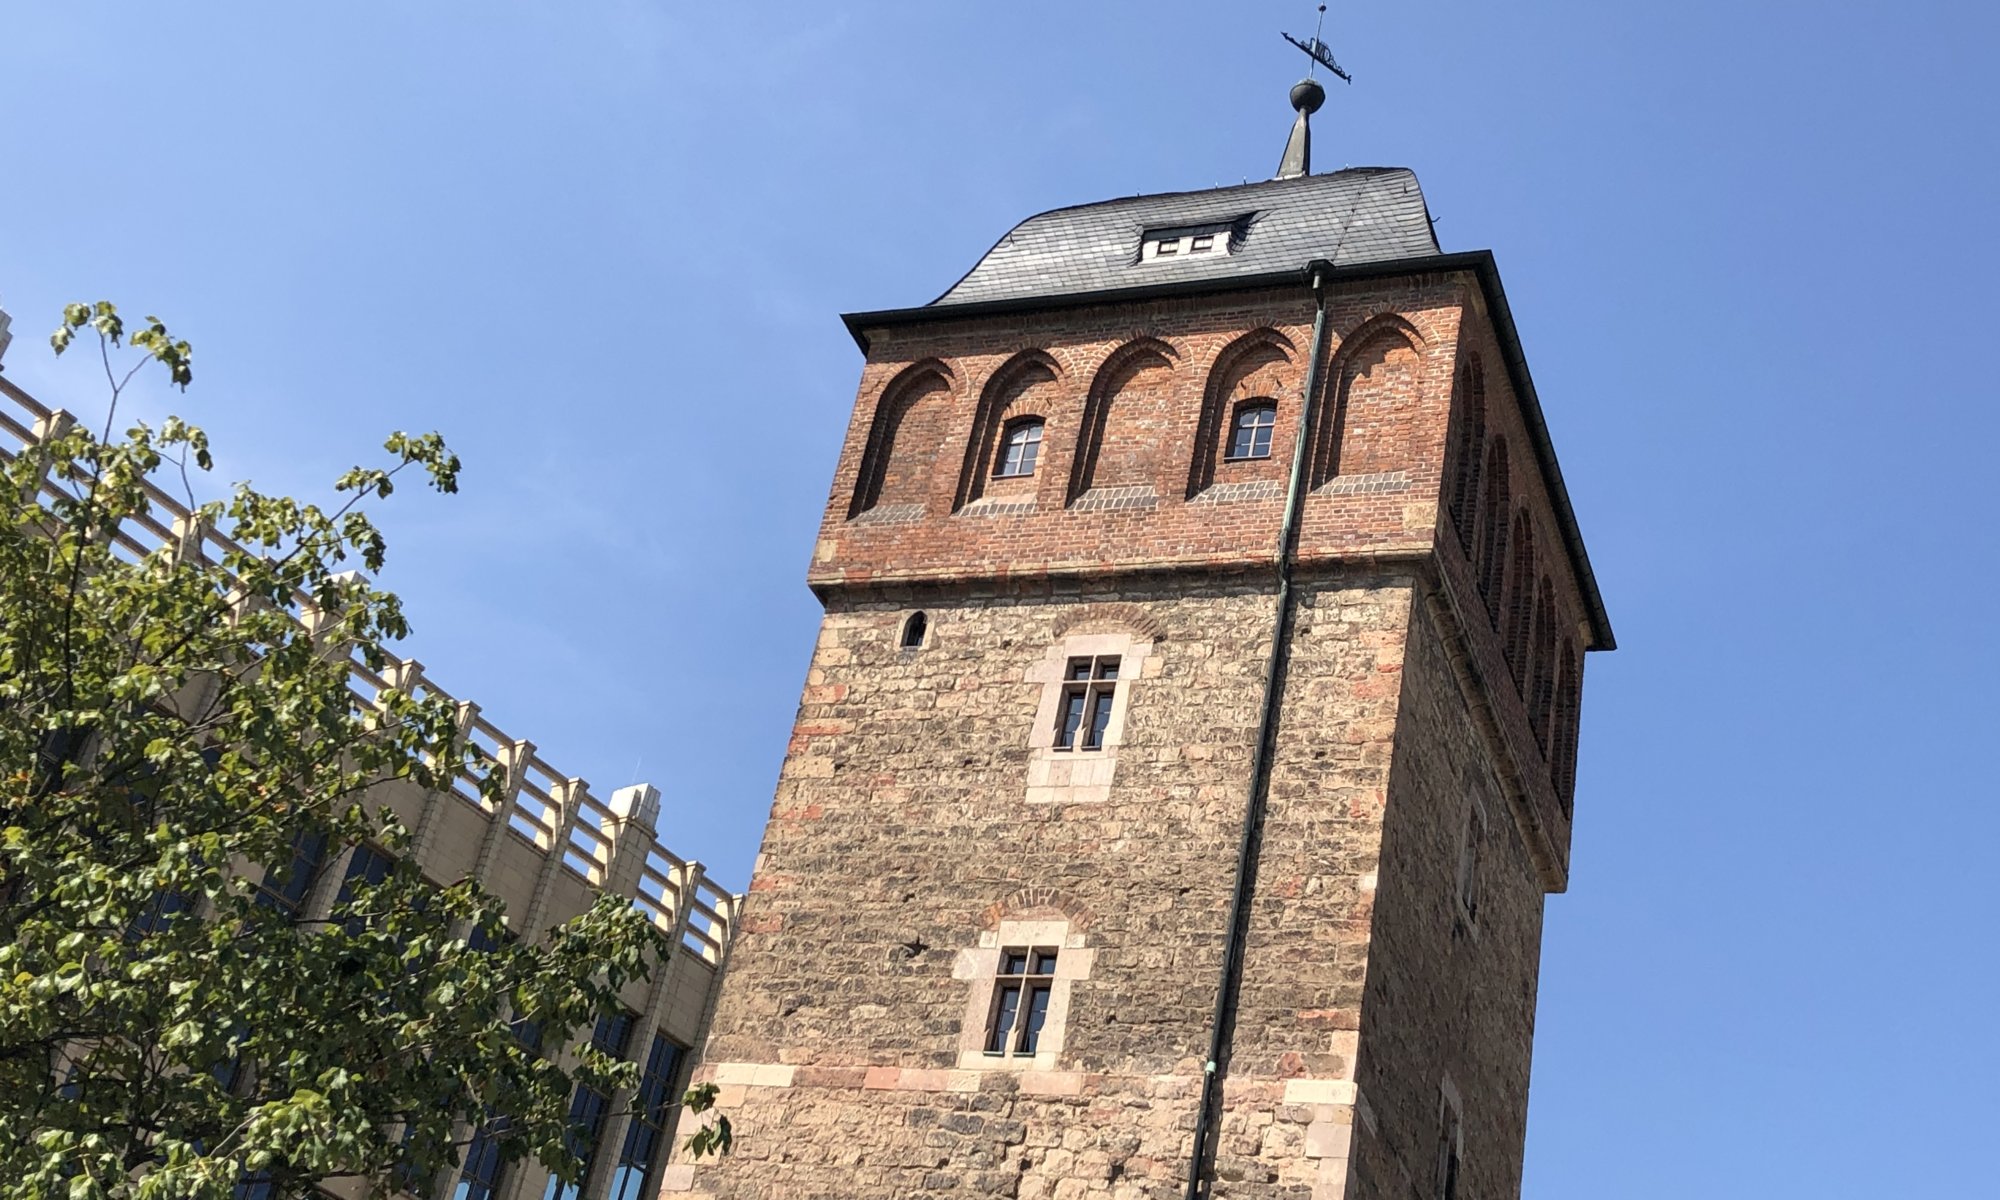 Chemnitz Karl Marx Stadt Burg Rabenstein Roter Turm Opernhaus Merian 0220 